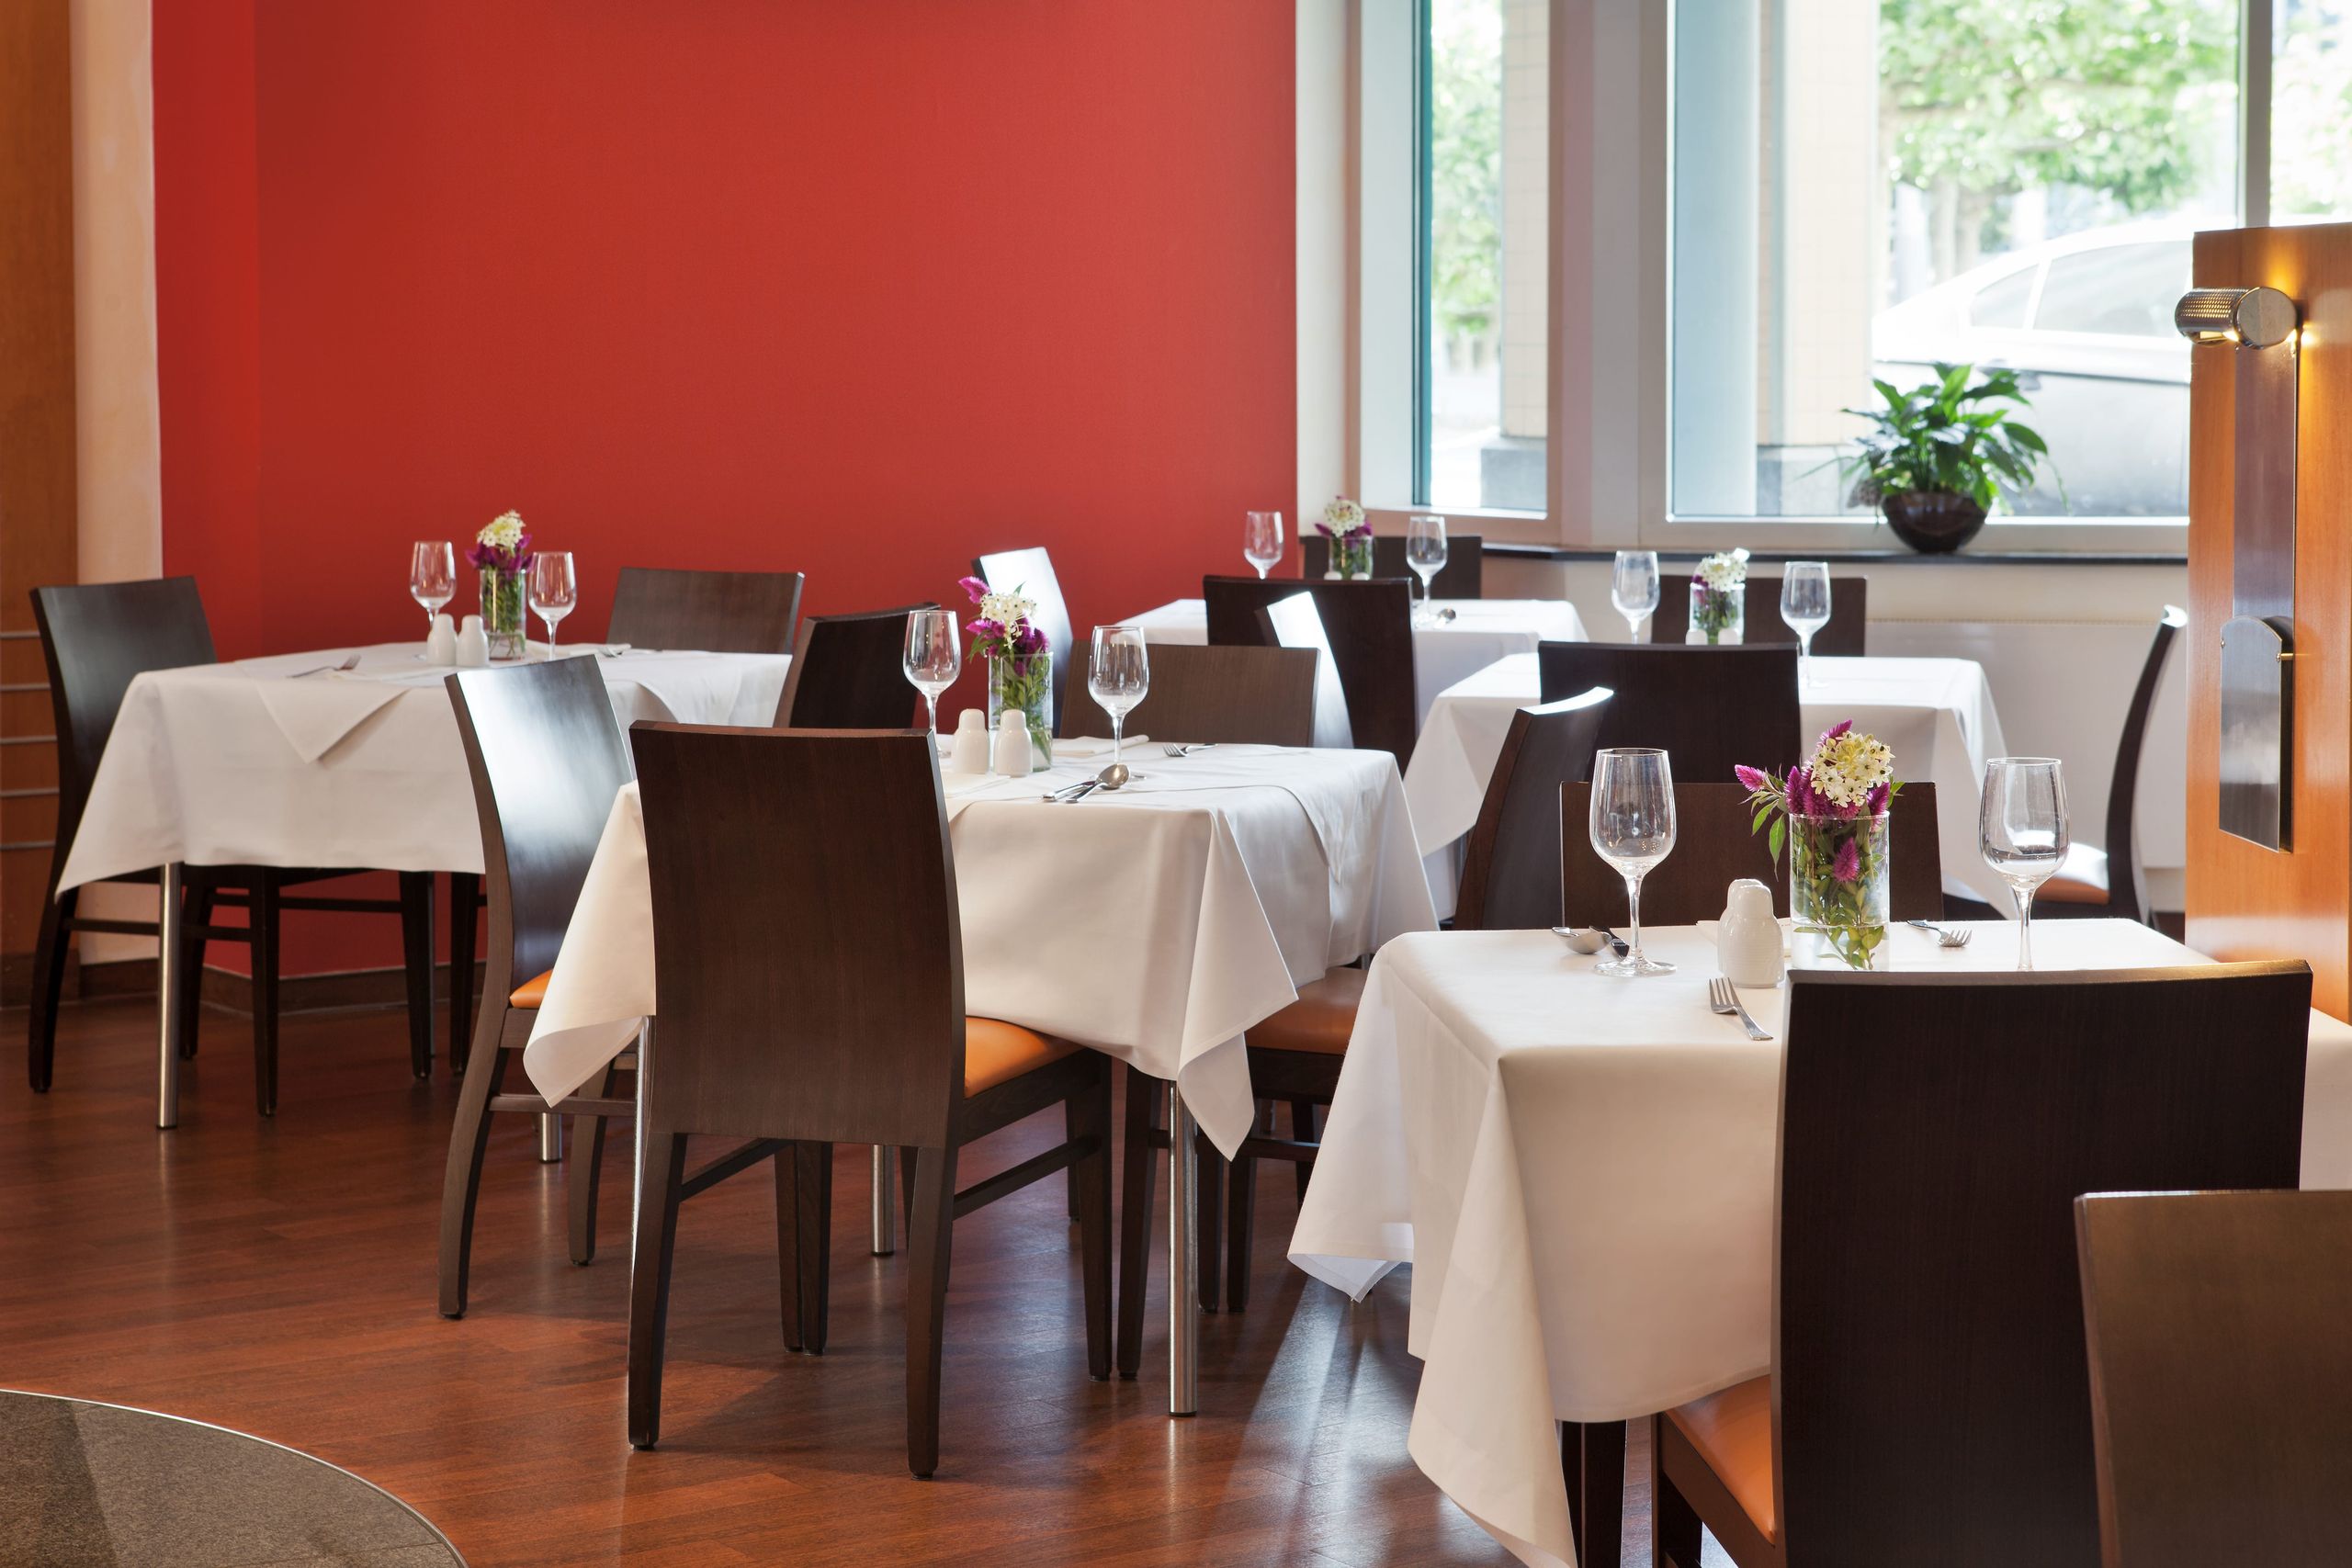 IntercityHotel Kassel – restaurant with bar